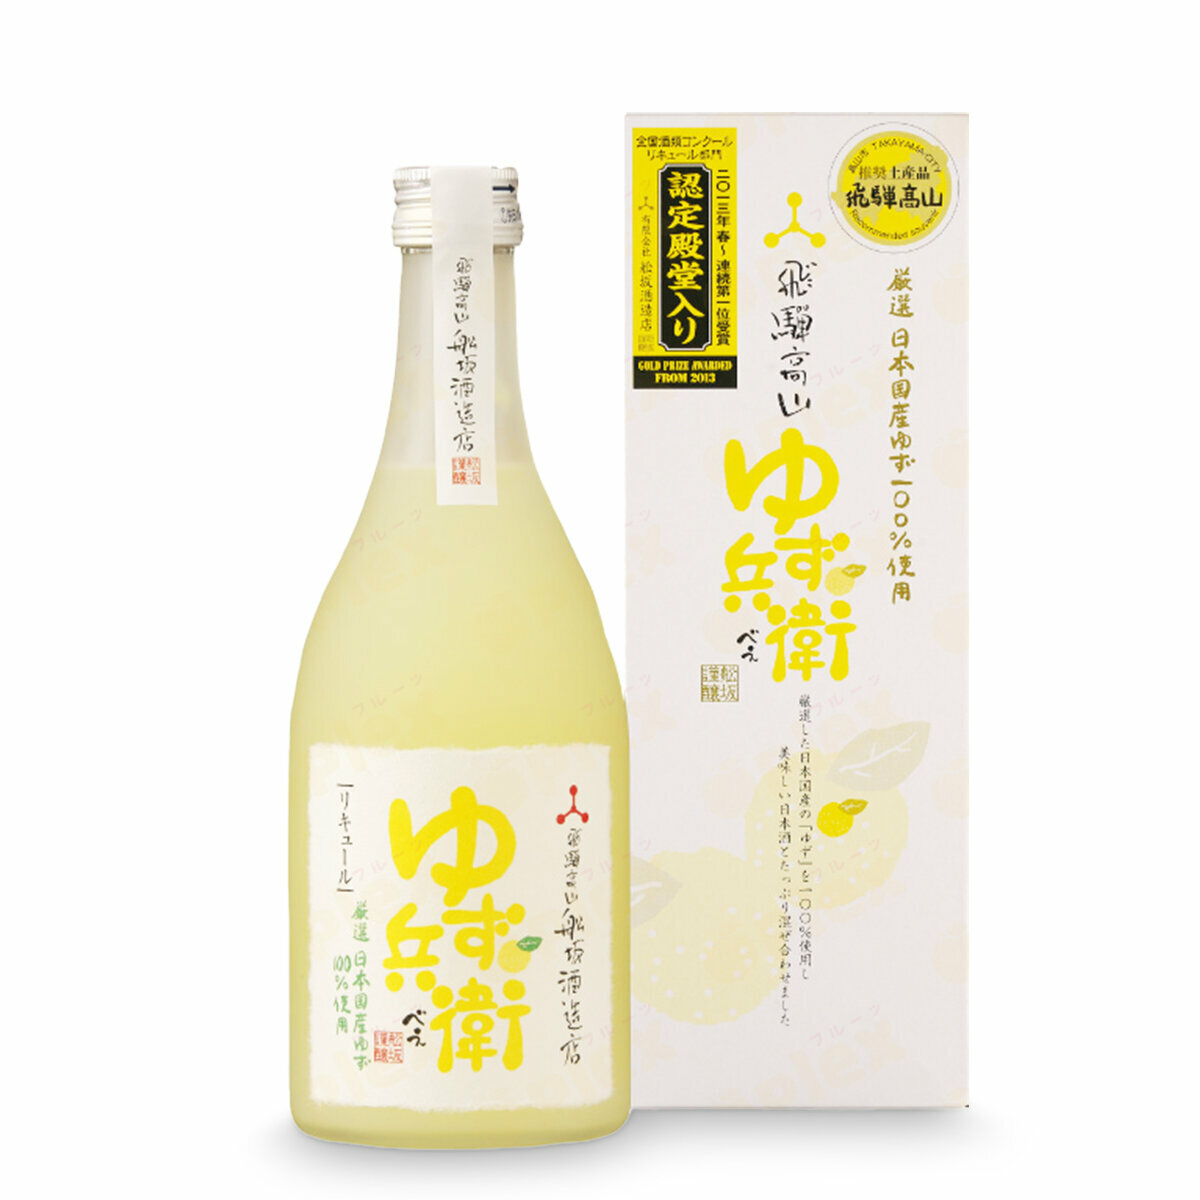 舩坂酒造- 飛驛高山柚子兵衛柚子酒(7%酒精) (500ml) x 1 樽(4948788100030)